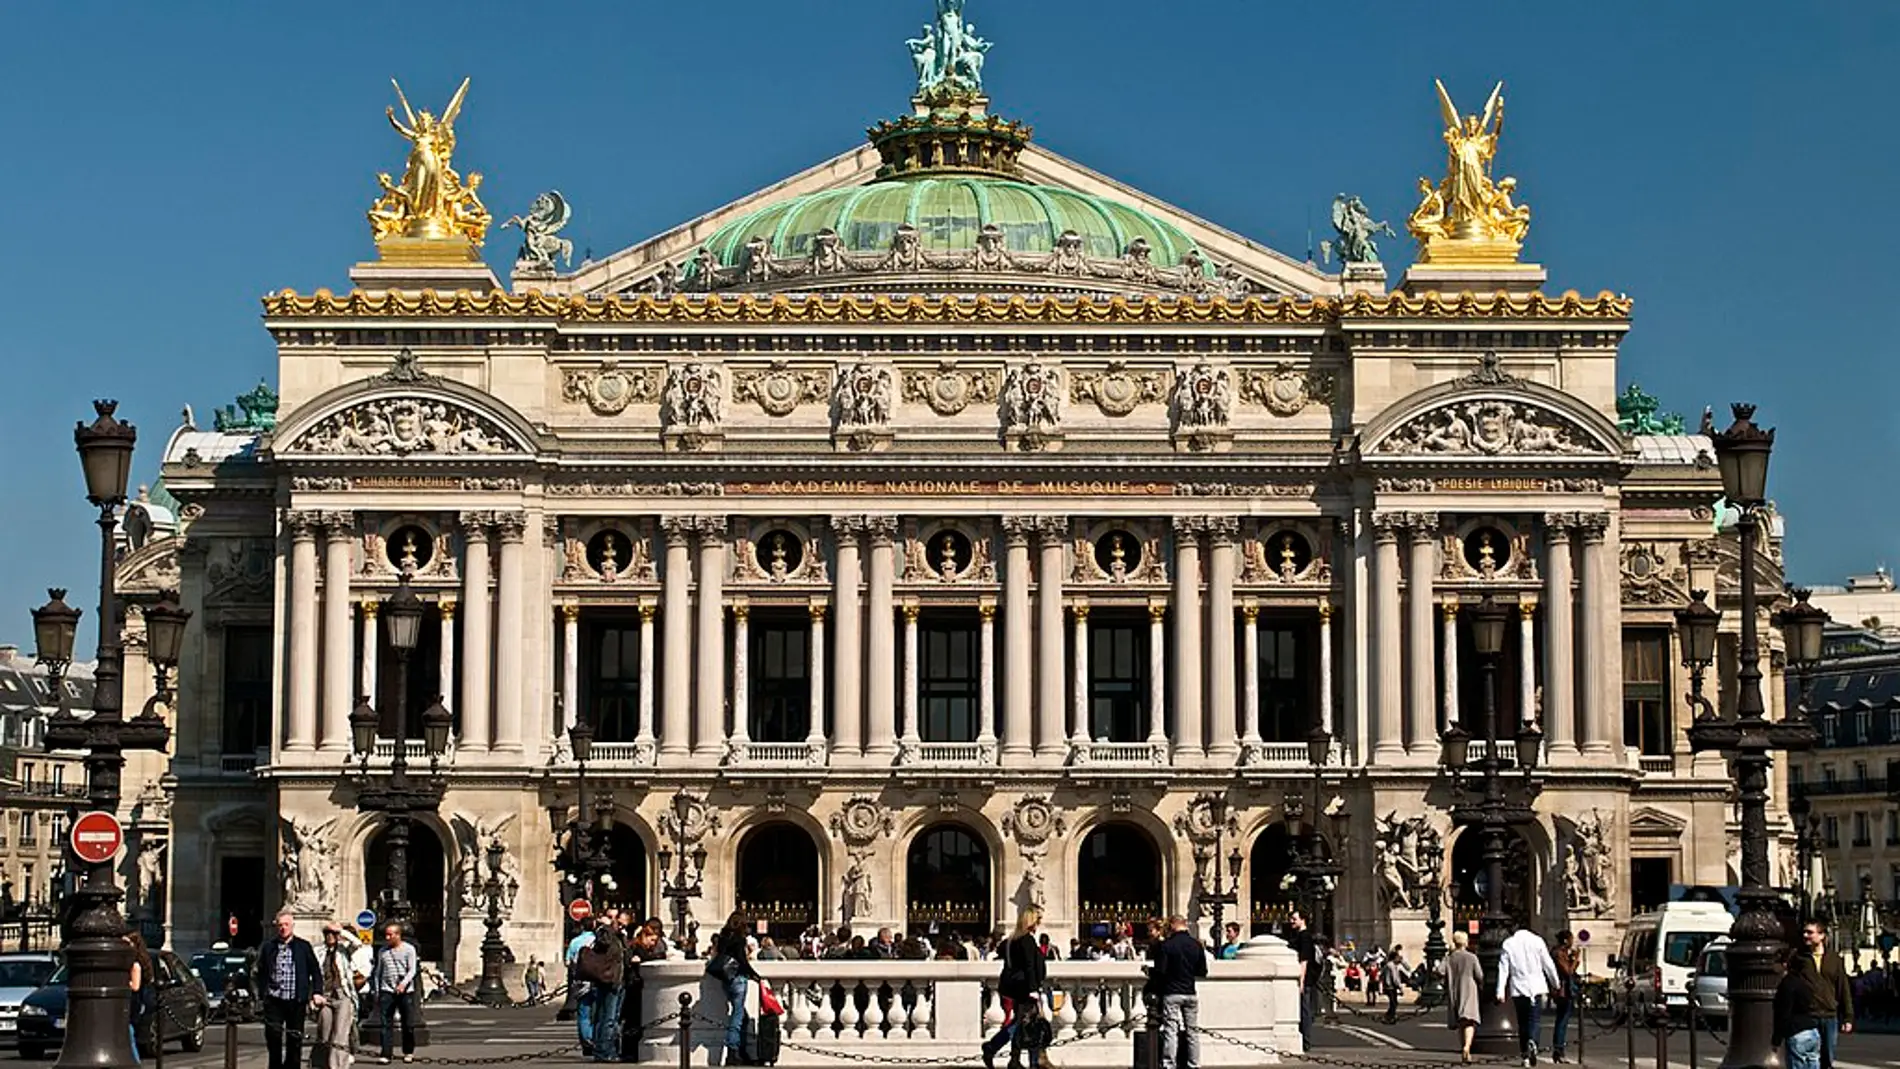 Ópera Garnier de París: quién ordenó su construcción y por qué es conocida popularmente con ese nombre